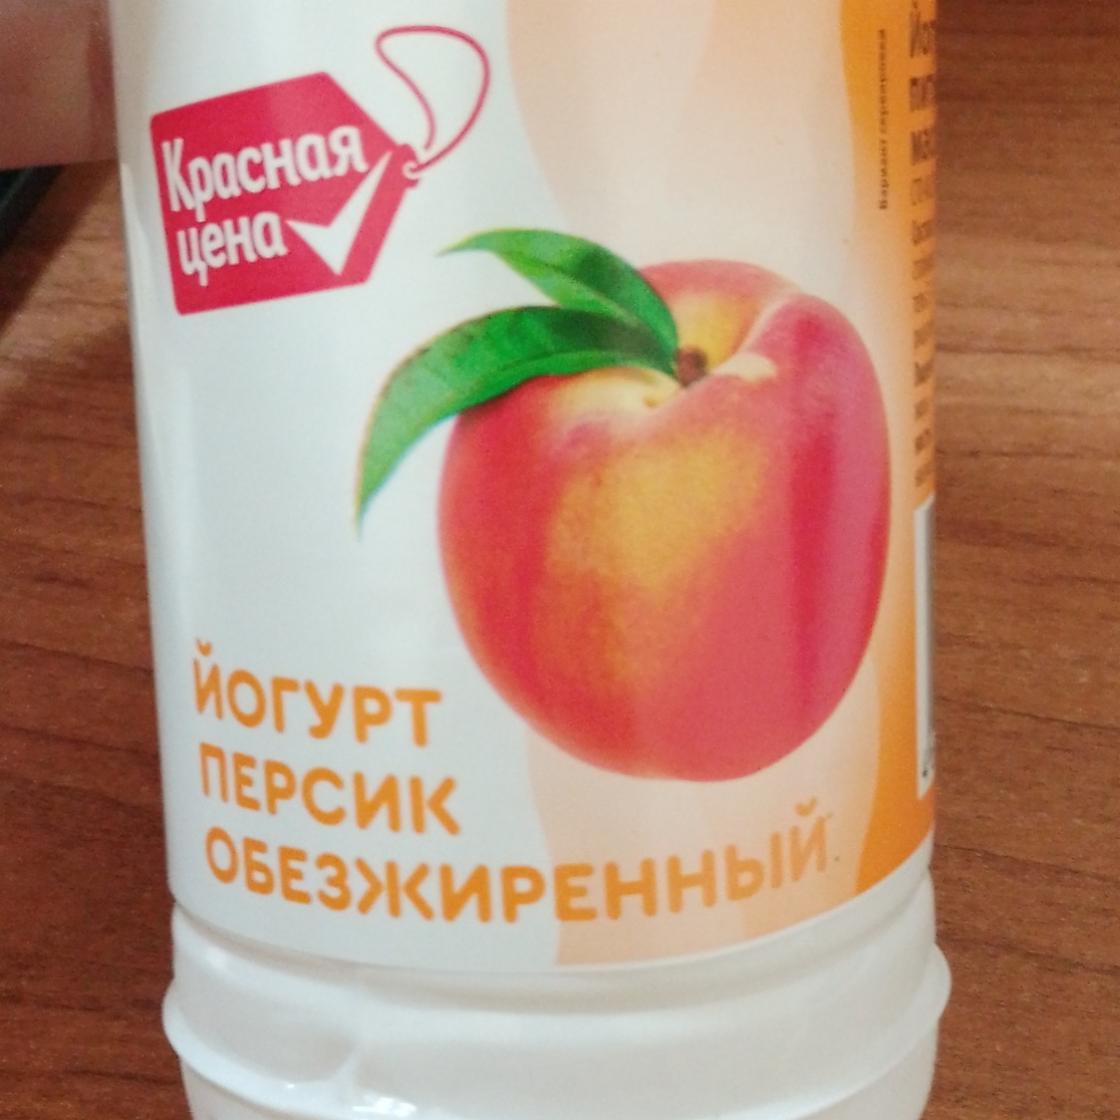 Фото - Йогурт персик обезжиренный 0.1% Красная цена